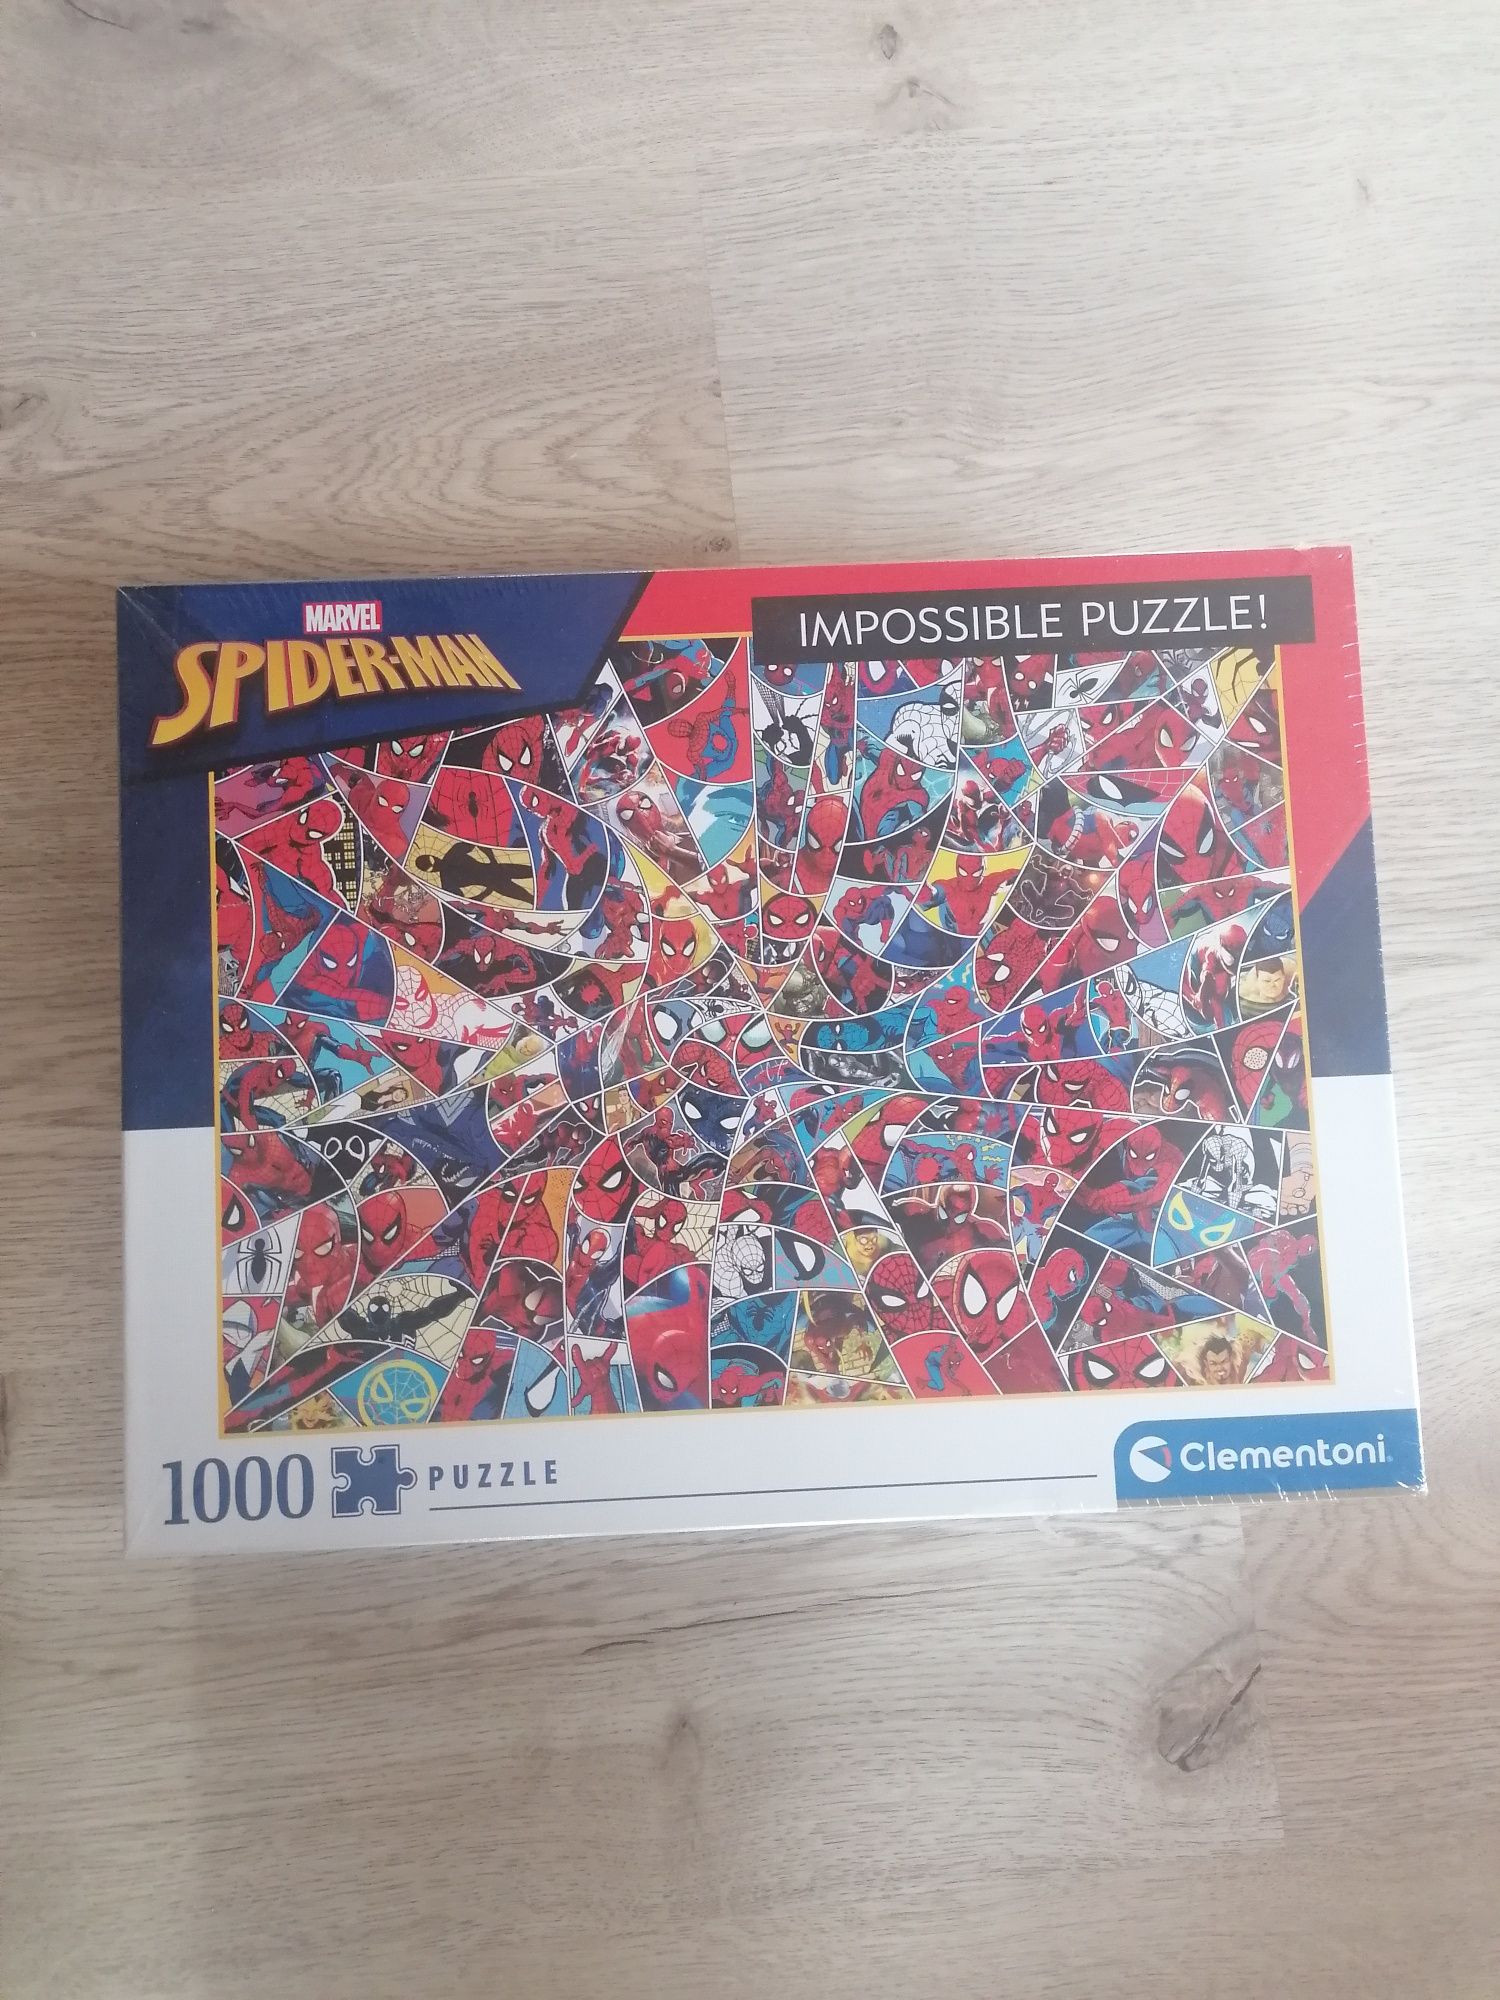 Nowe puzzle clementoni spiderman 1000 elementów